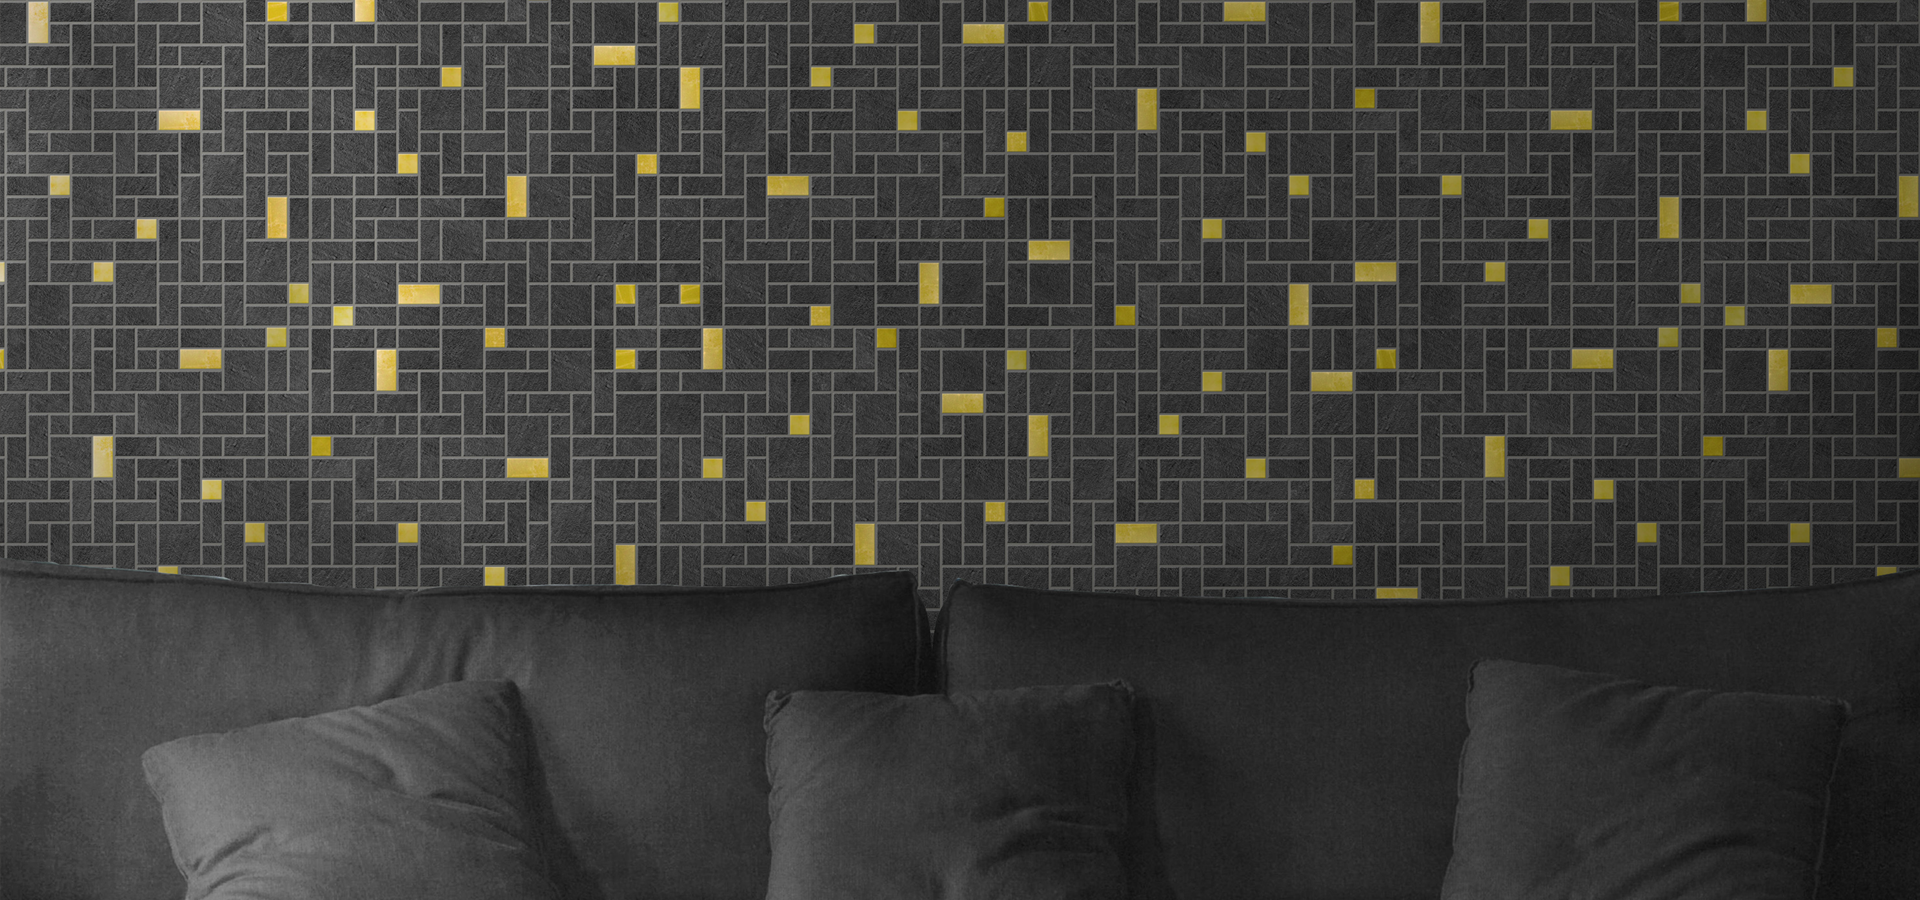 mosaic wall living room ceramic decoration home interior design